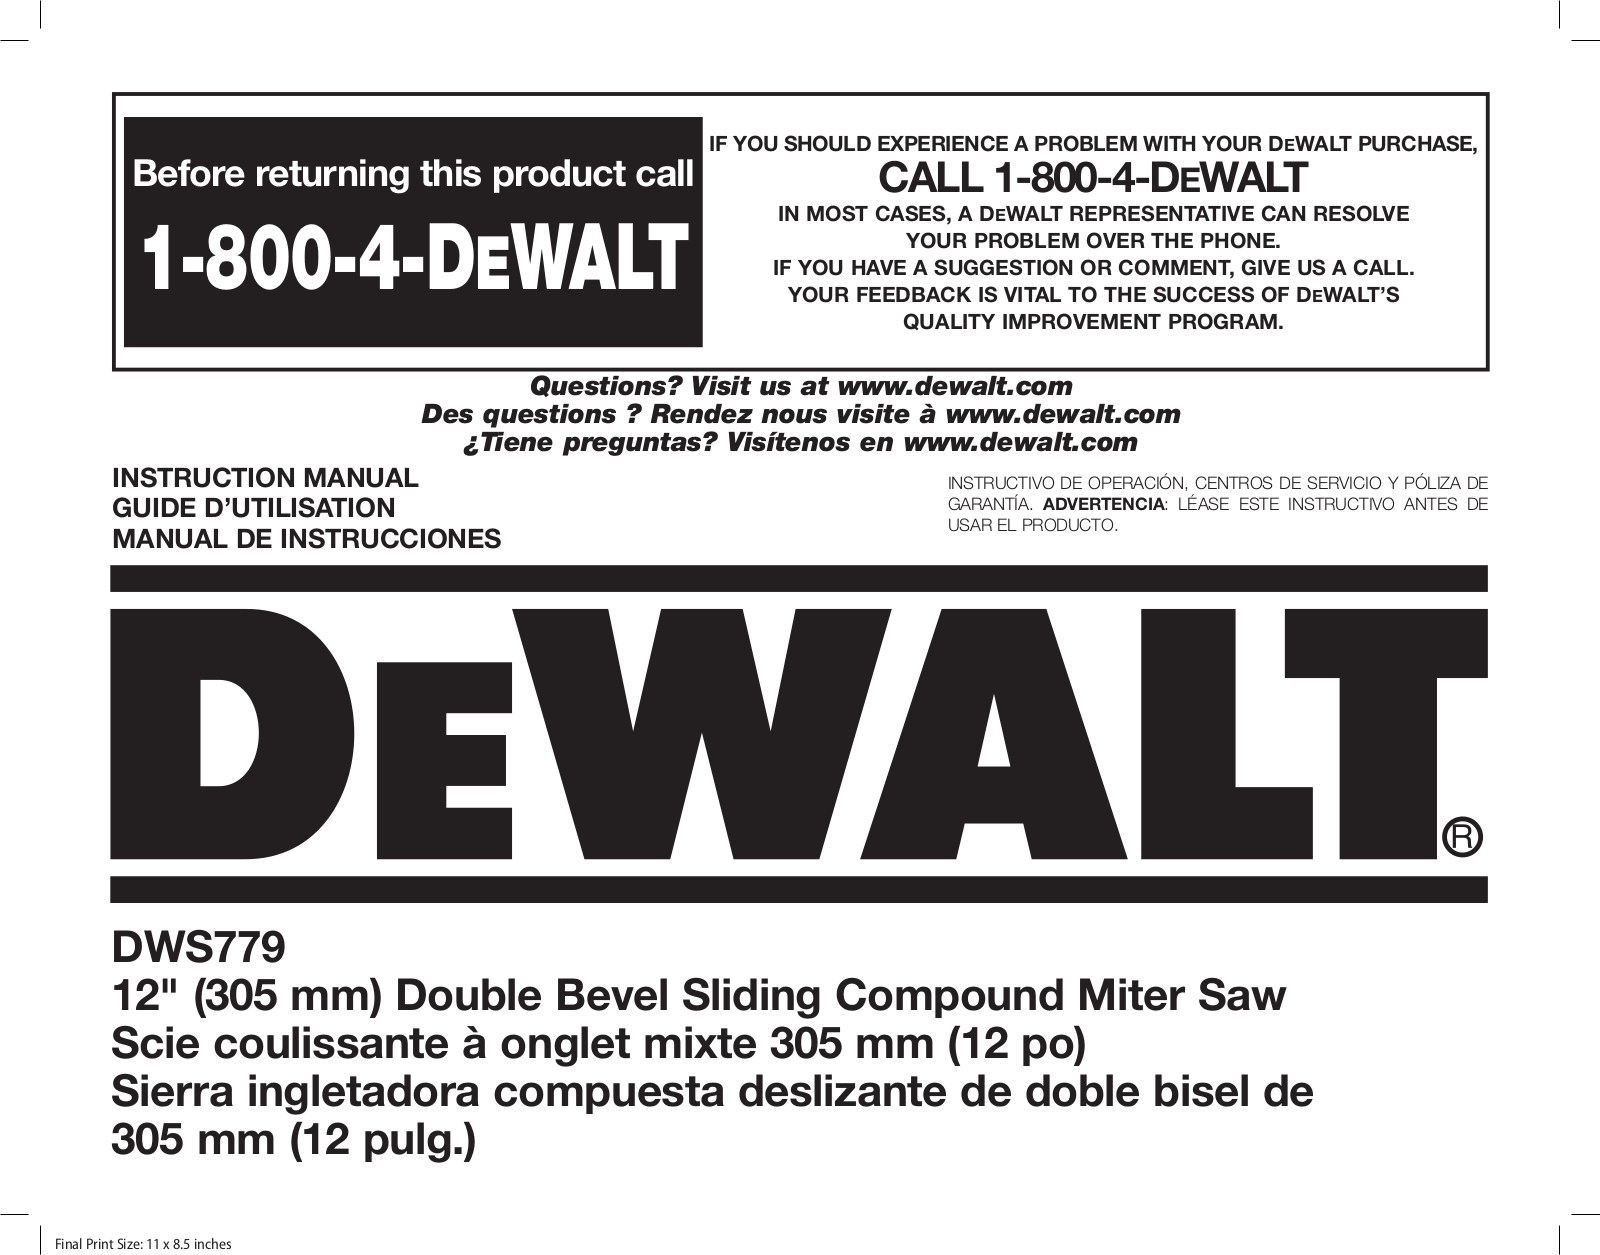 Dewalt DWS779 User Manual